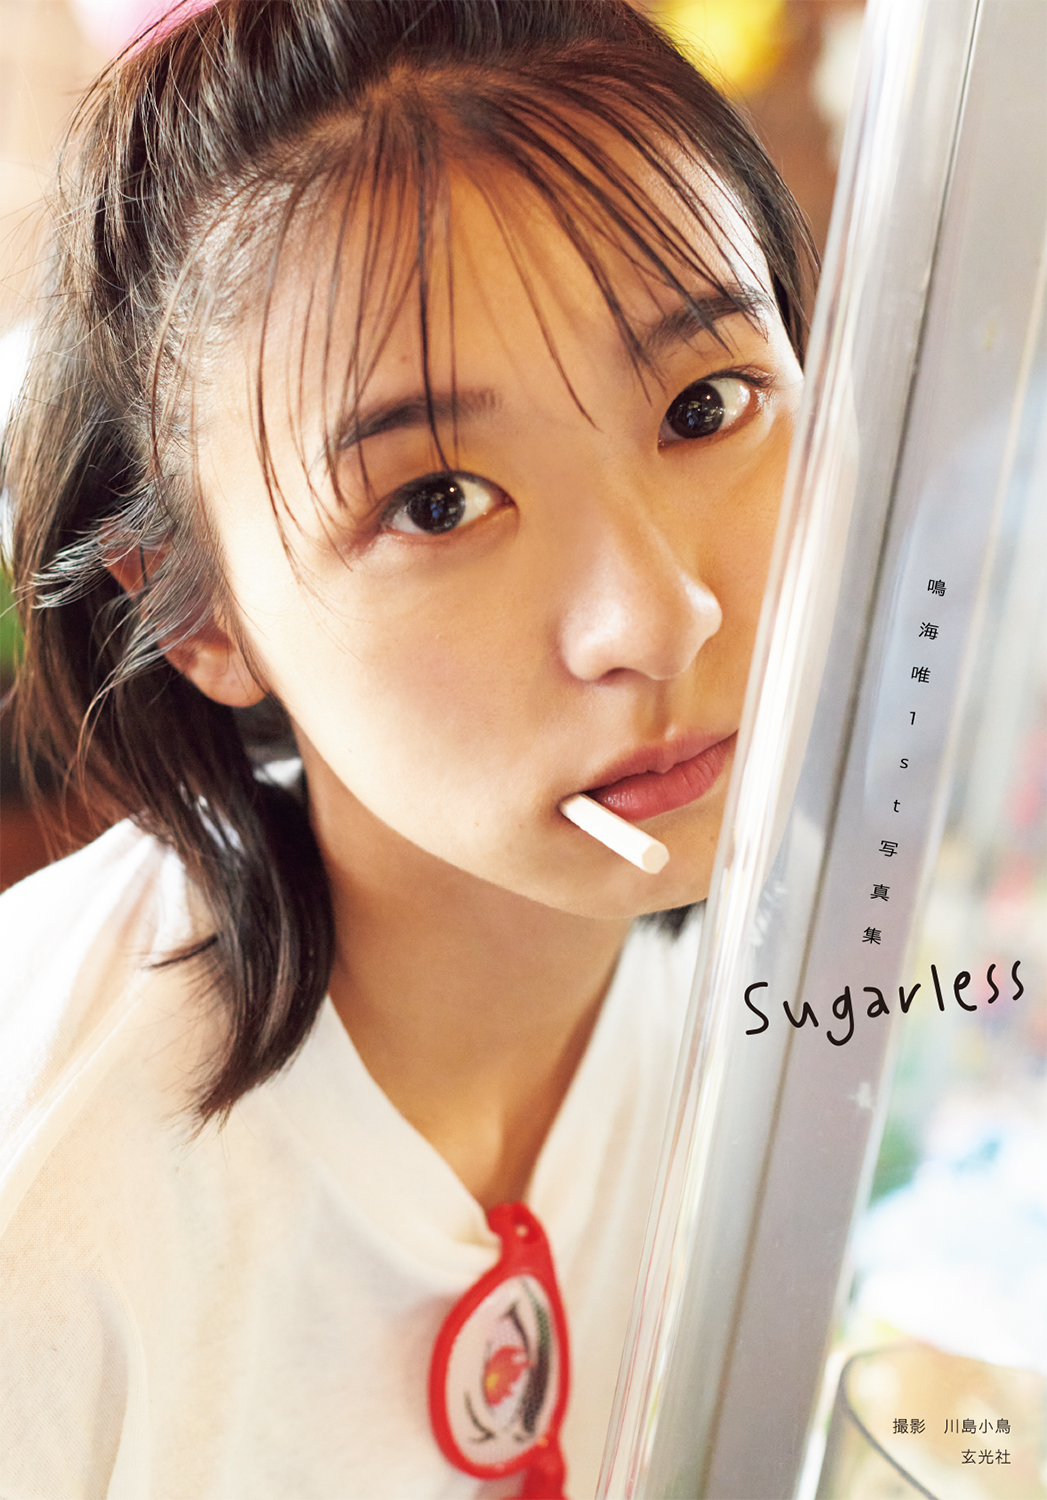 注目の女優・鳴海唯の1st写真集Sugarless  タイトル&カバーカットを初公開！